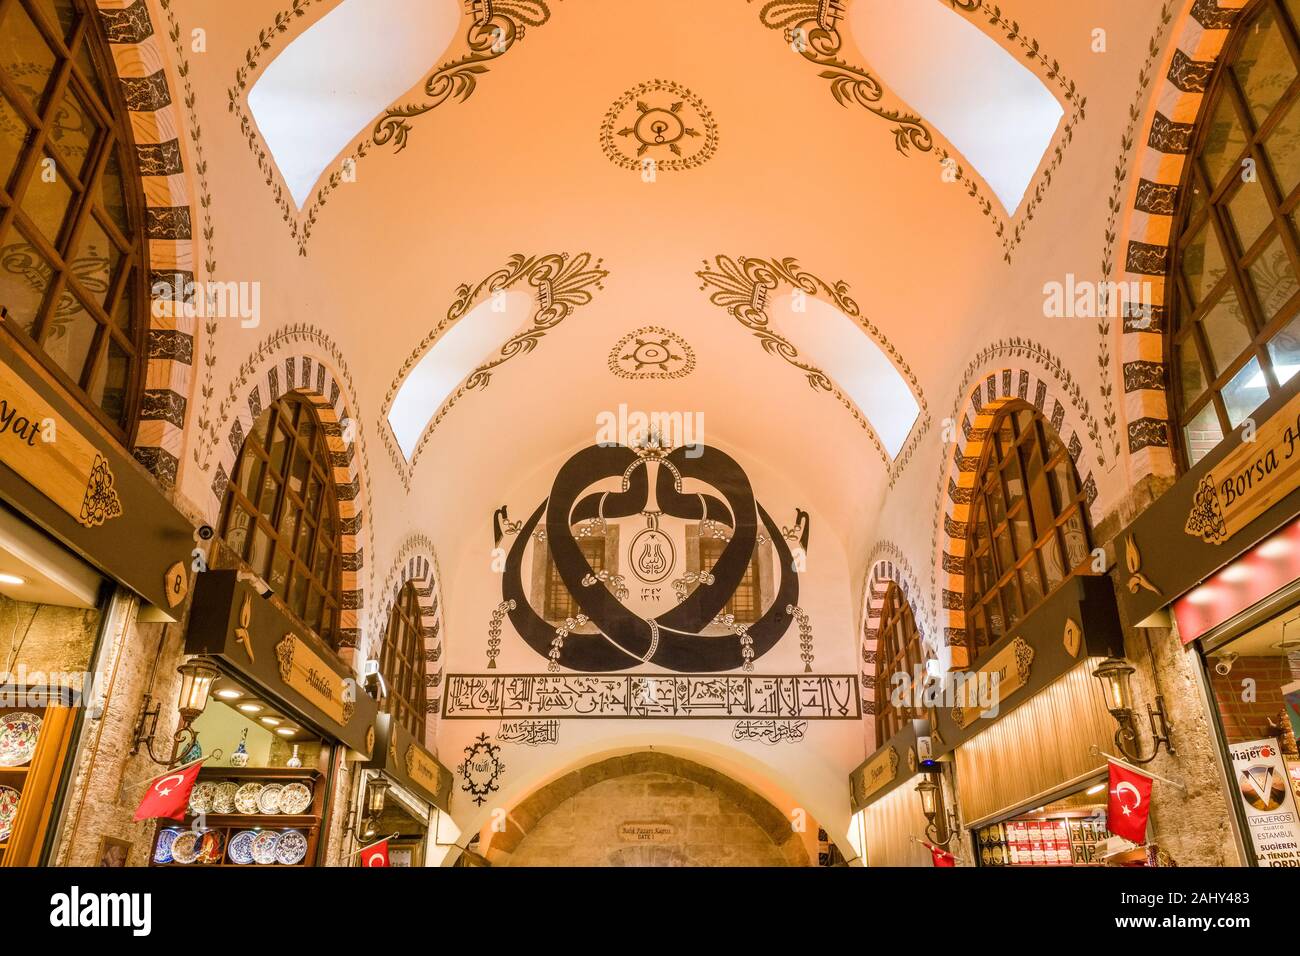 Il design degli interni di Bazar delle Spezie, Mısır Çarşısı, noto anche come il Bazaar Egiziano Foto Stock